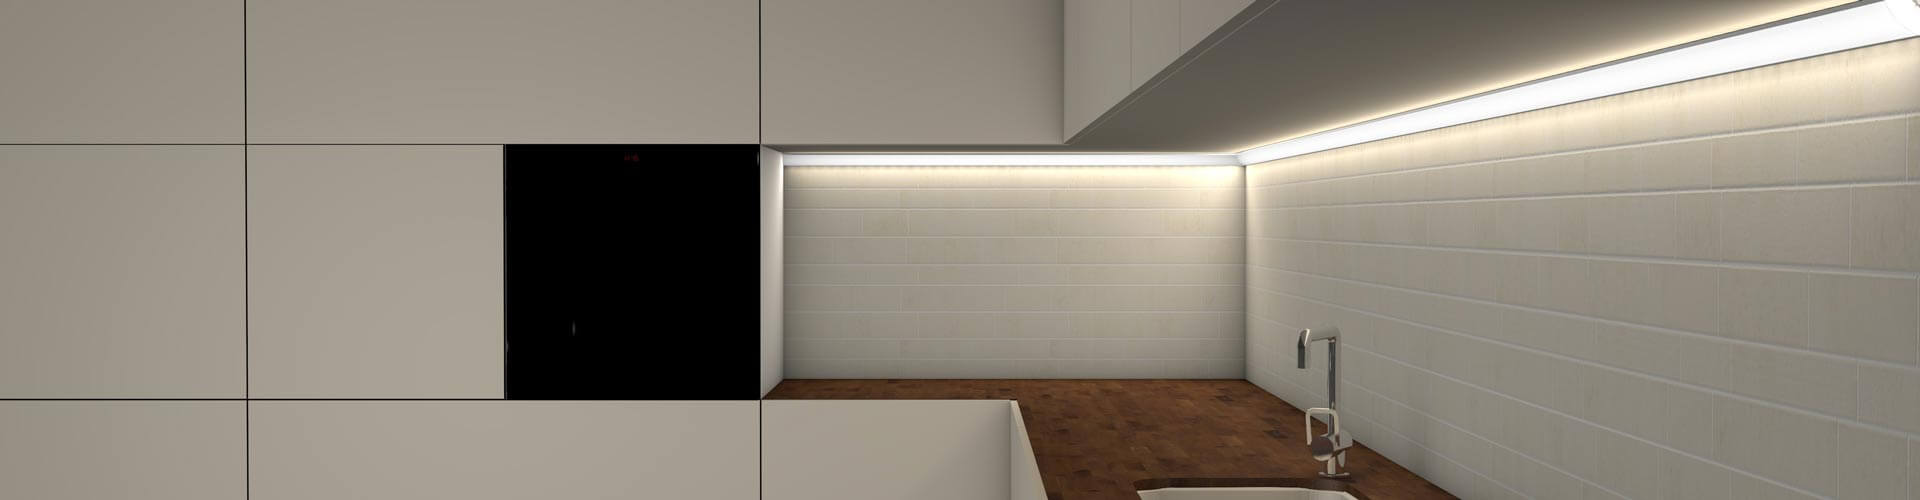 Küchenunterbaubeleuchtung mit neutralweißen Licht und LED Alu Profil LOC